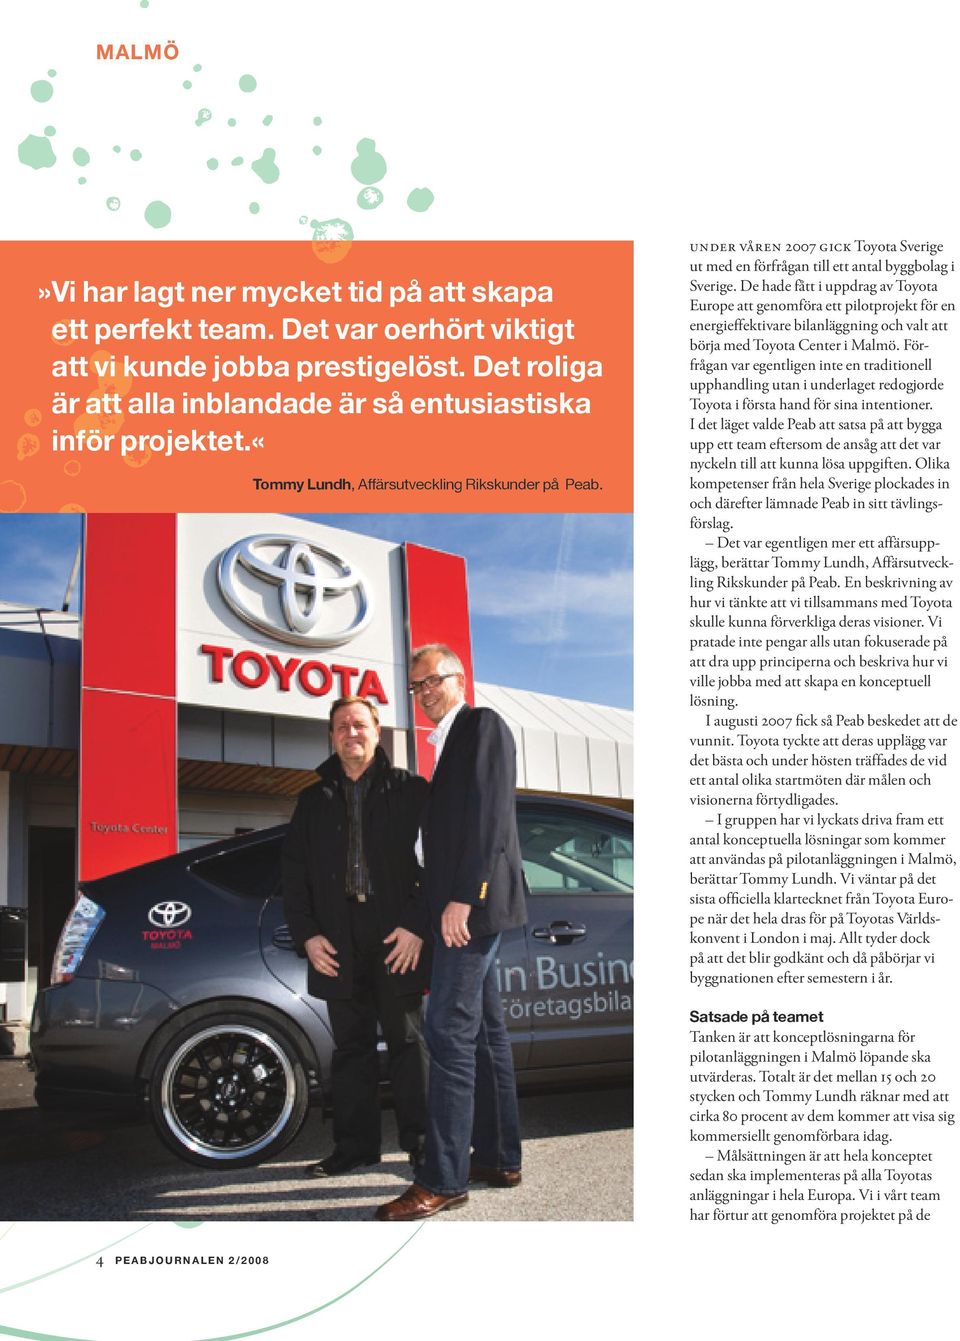 De hade fått i uppdrag av Toyota Europe att genomföra ett pilotprojekt för en energieffektivare bilanläggning och valt att börja med Toyota Center i Malmö.